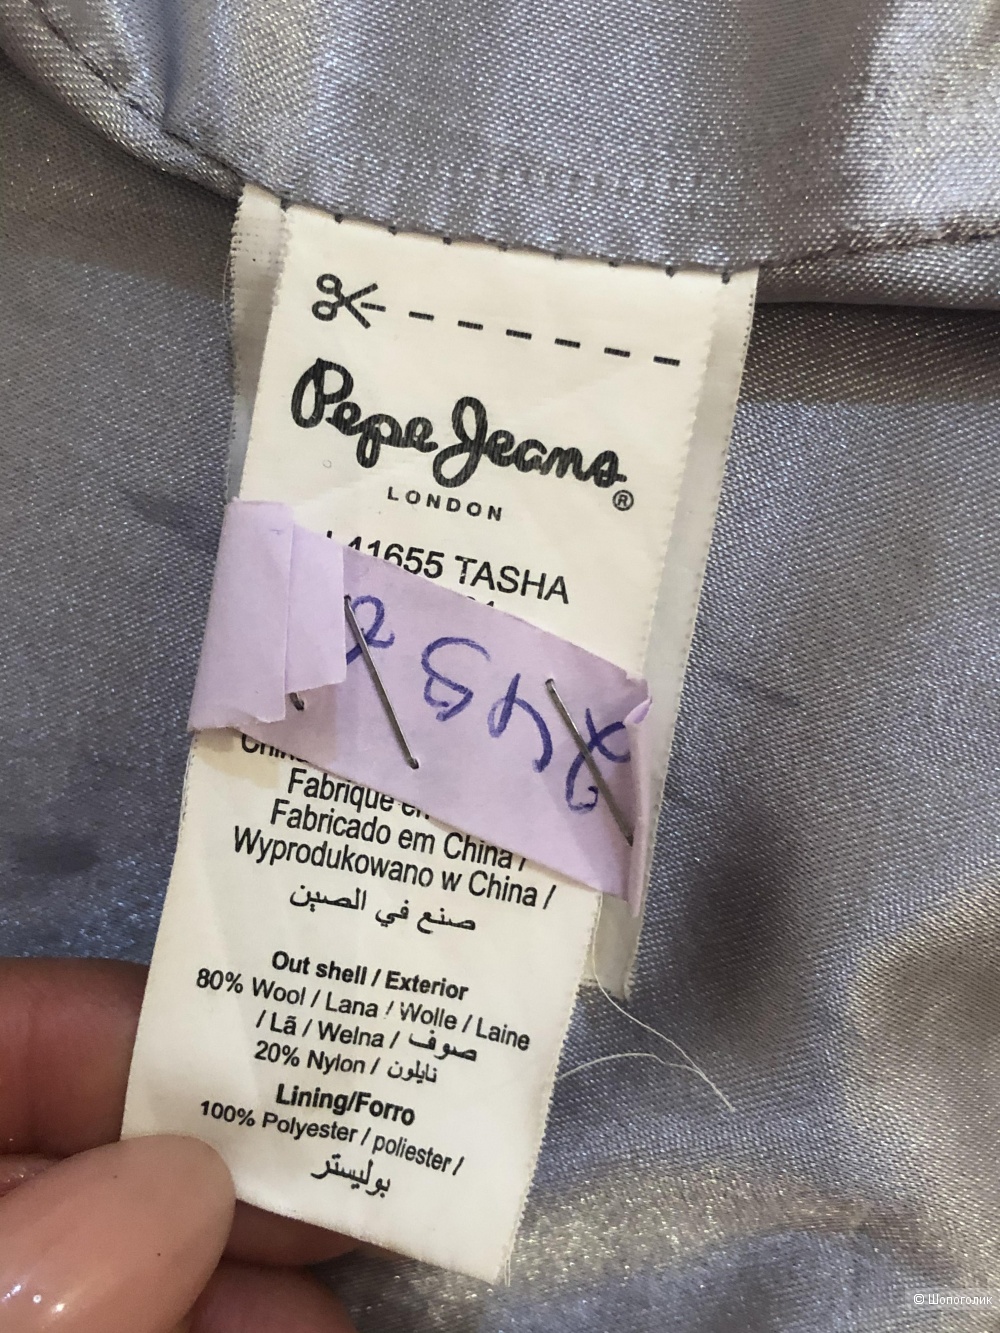 Пальто Pepe Jeans London, размер S.